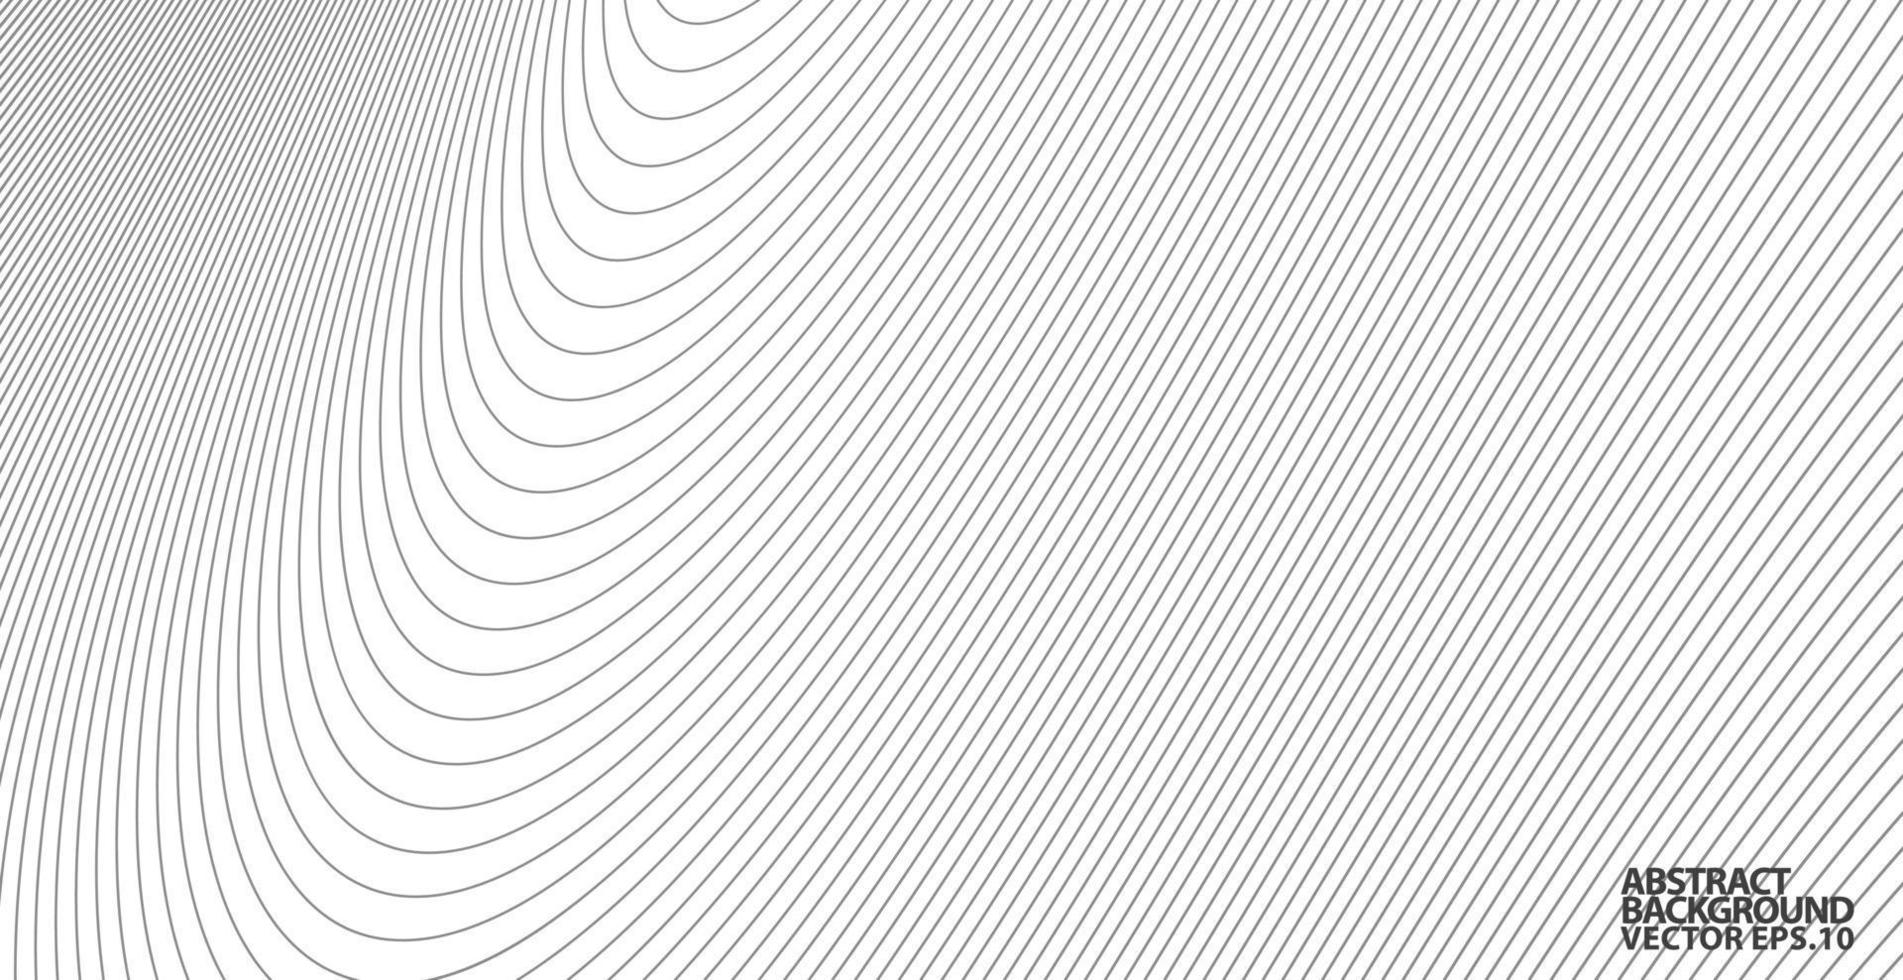 Fondo de círculo abstracto. gradiente retro línea patrón onda de sonido vector